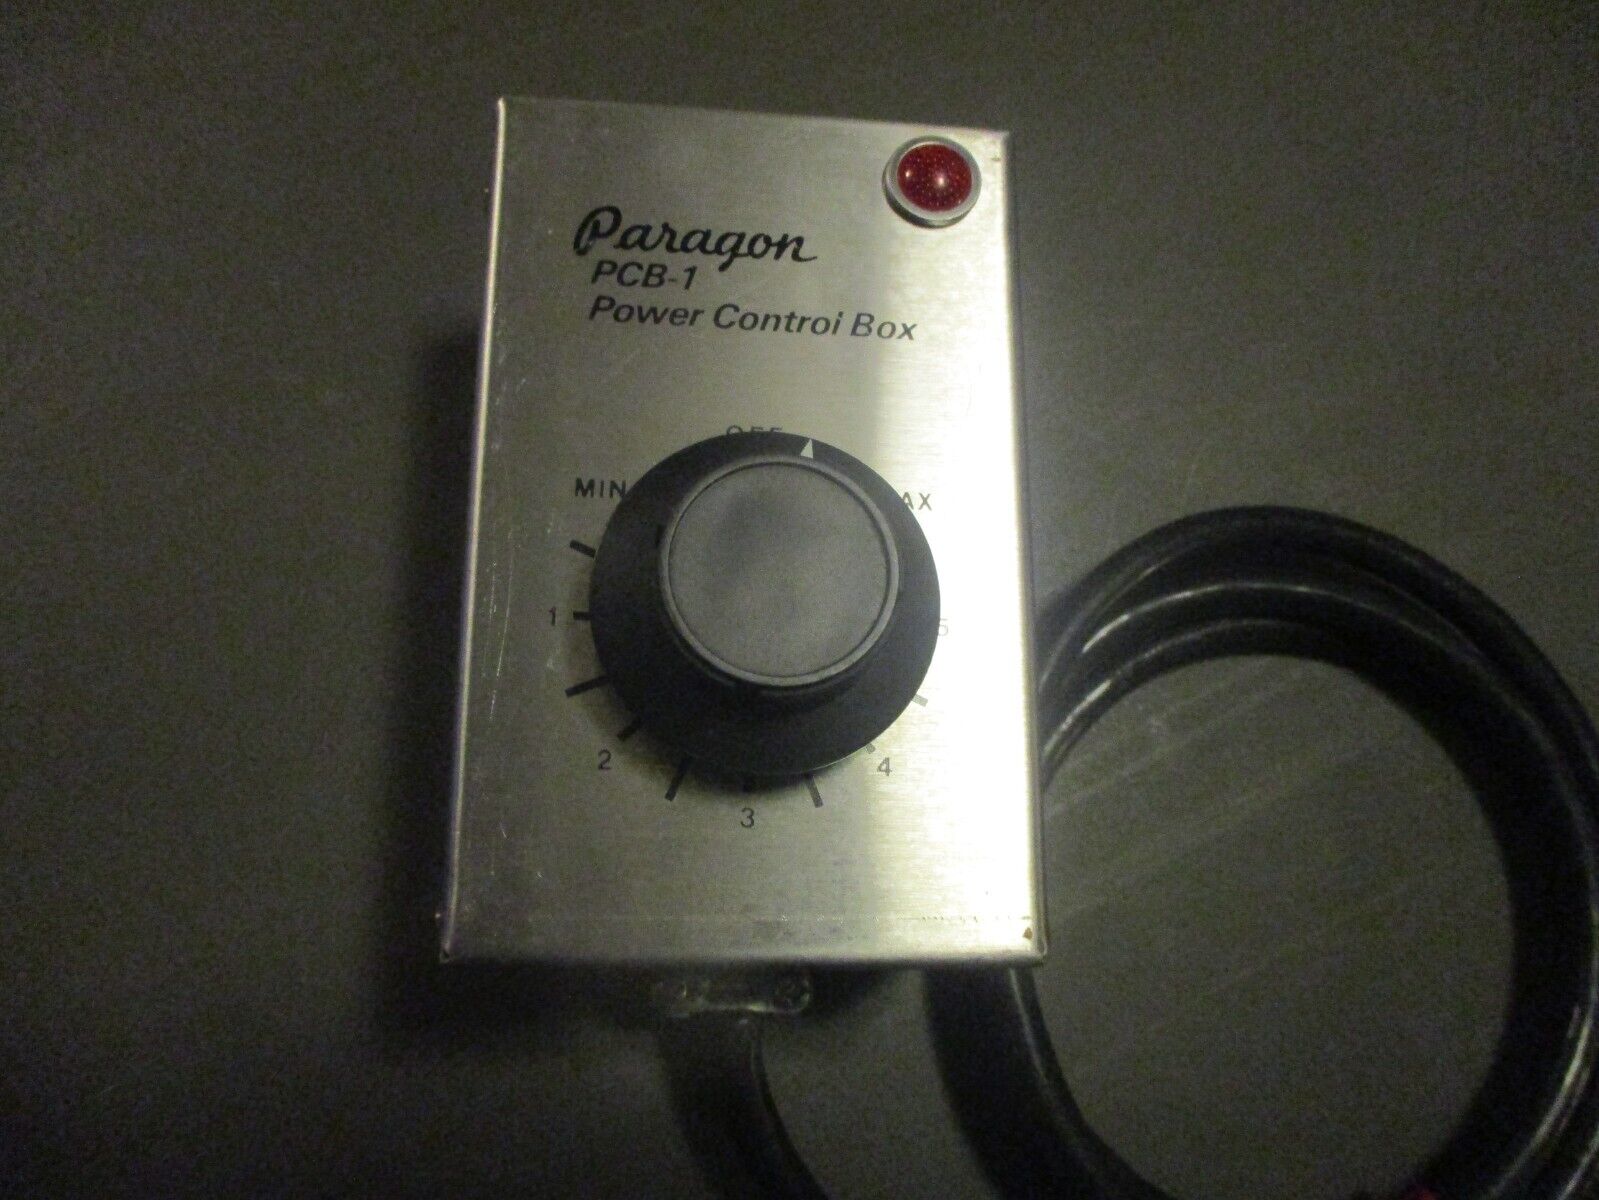 Paragon Pcb-1 Kiln Power Control Box